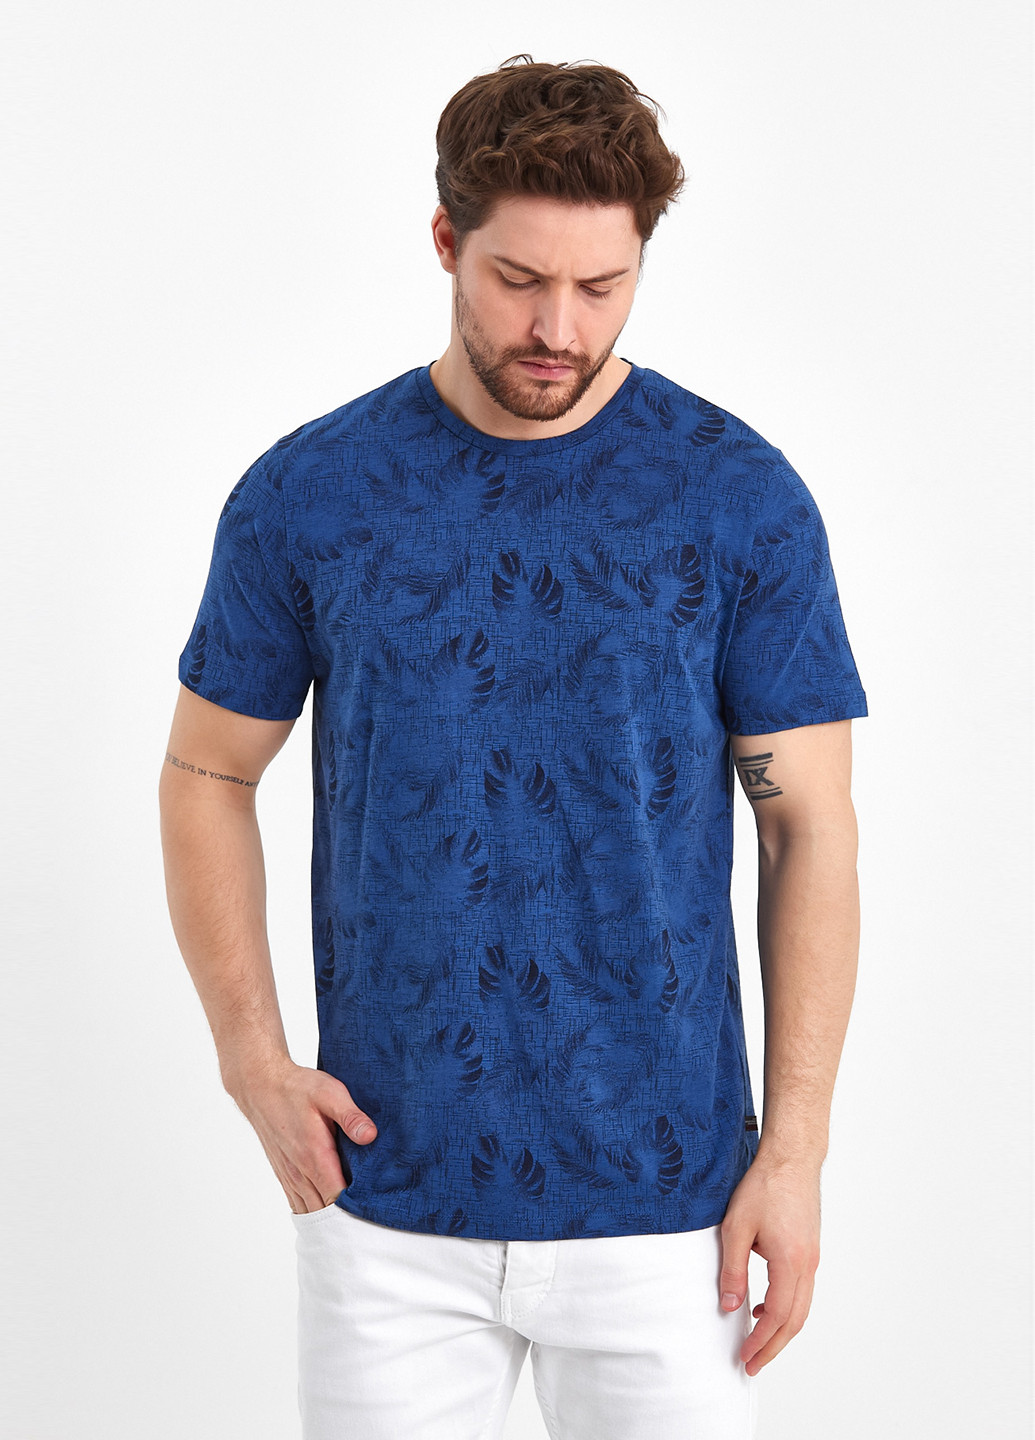 Индиго футболка-футболка для мужчин Trend Collection с рисунком